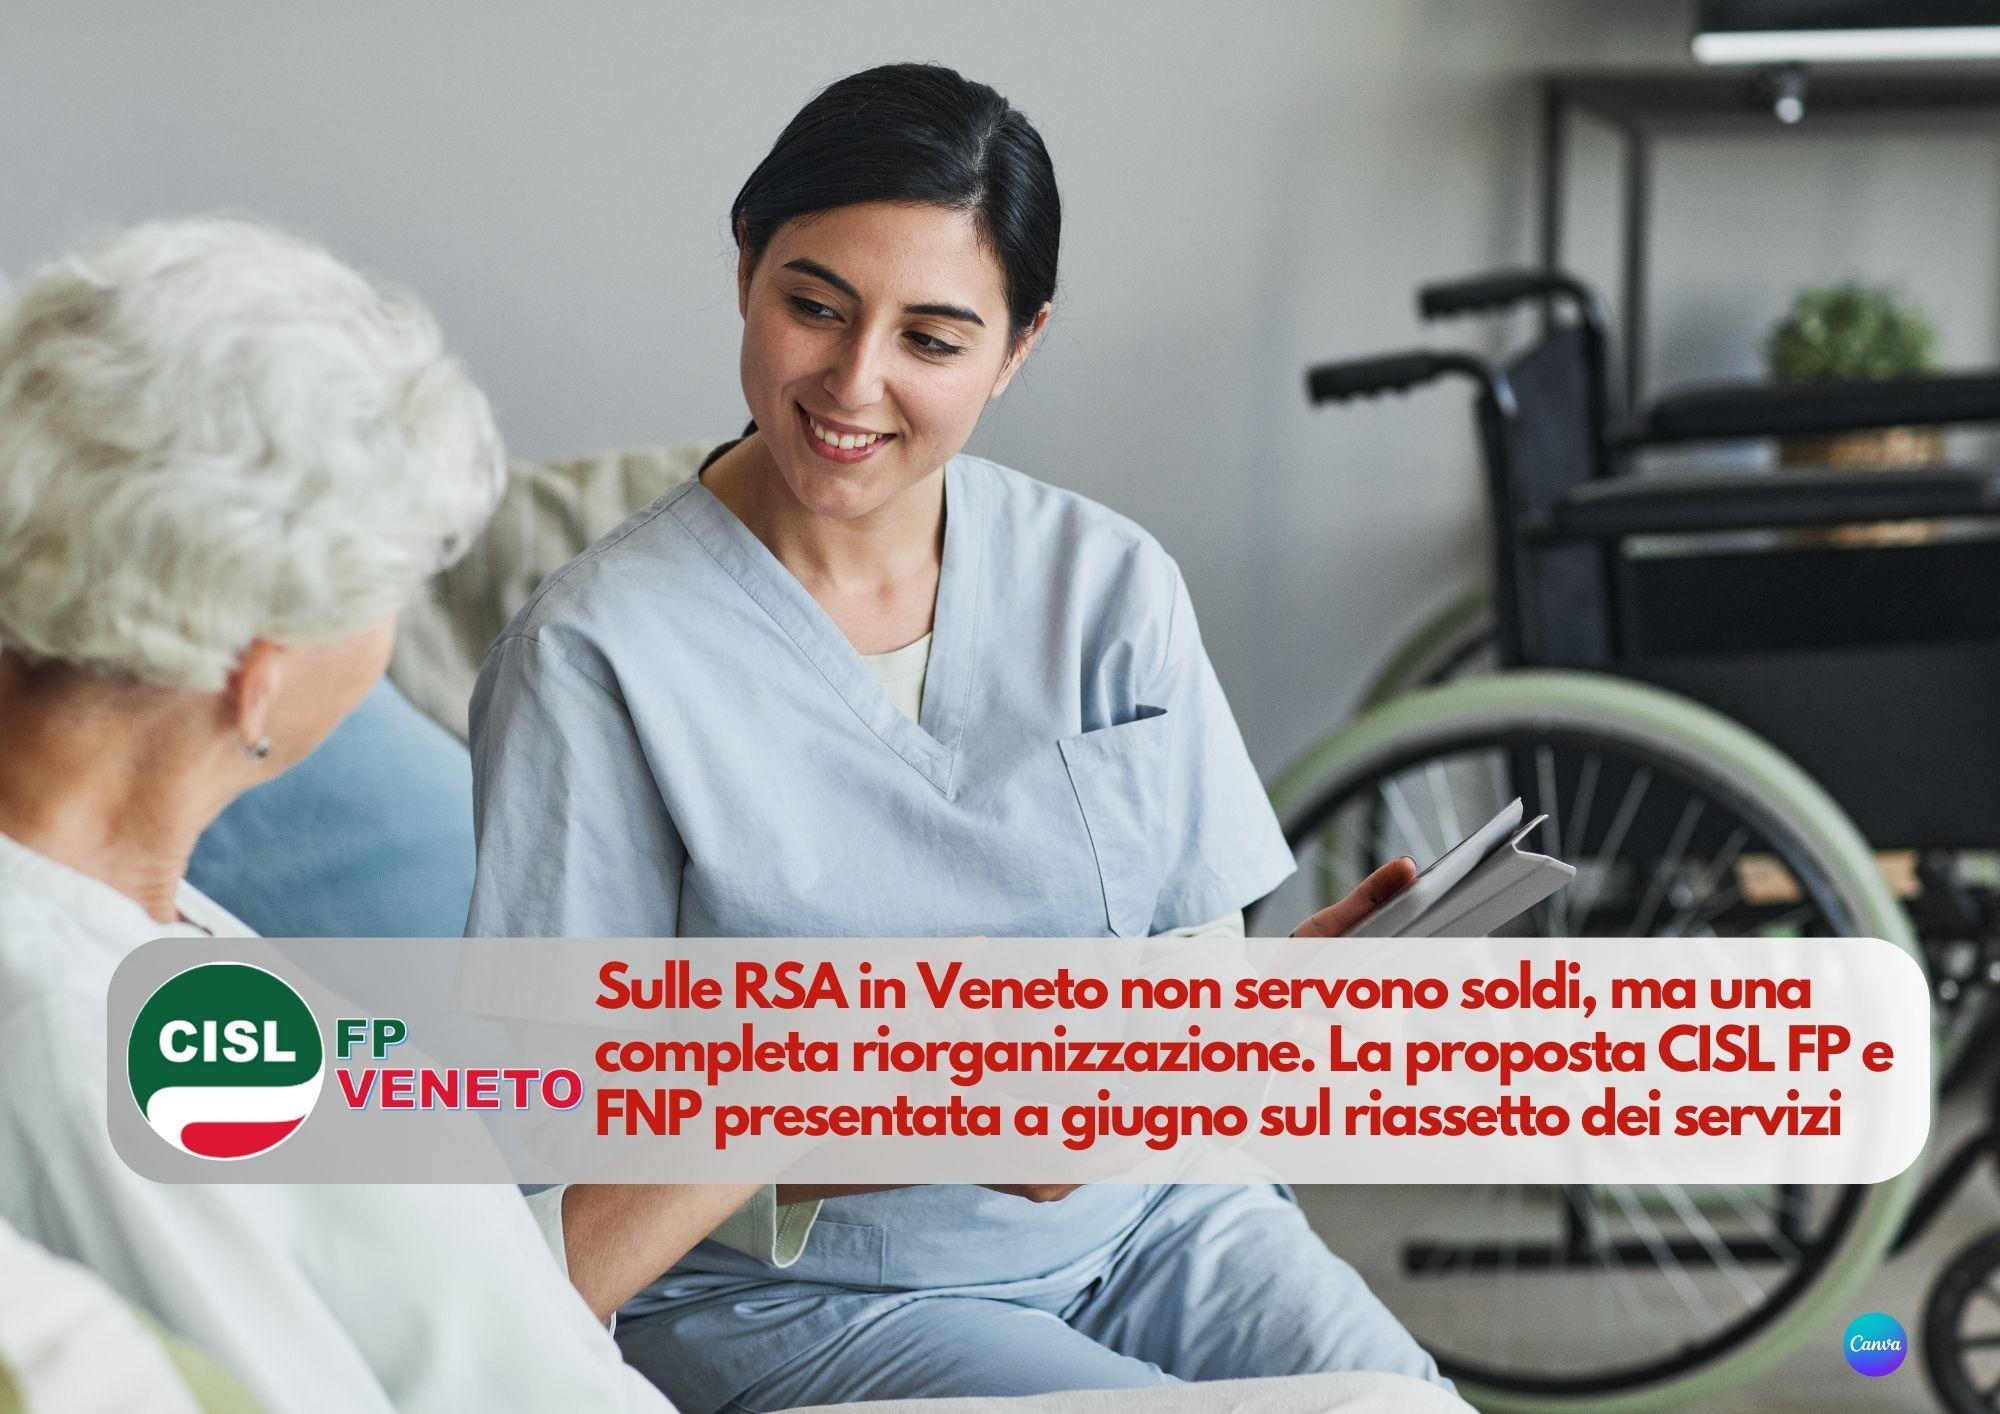 CISL FP Veneto. RSA: non servono soldi, ma una completa riorganizzazione. La proposta CISL FP e FNP